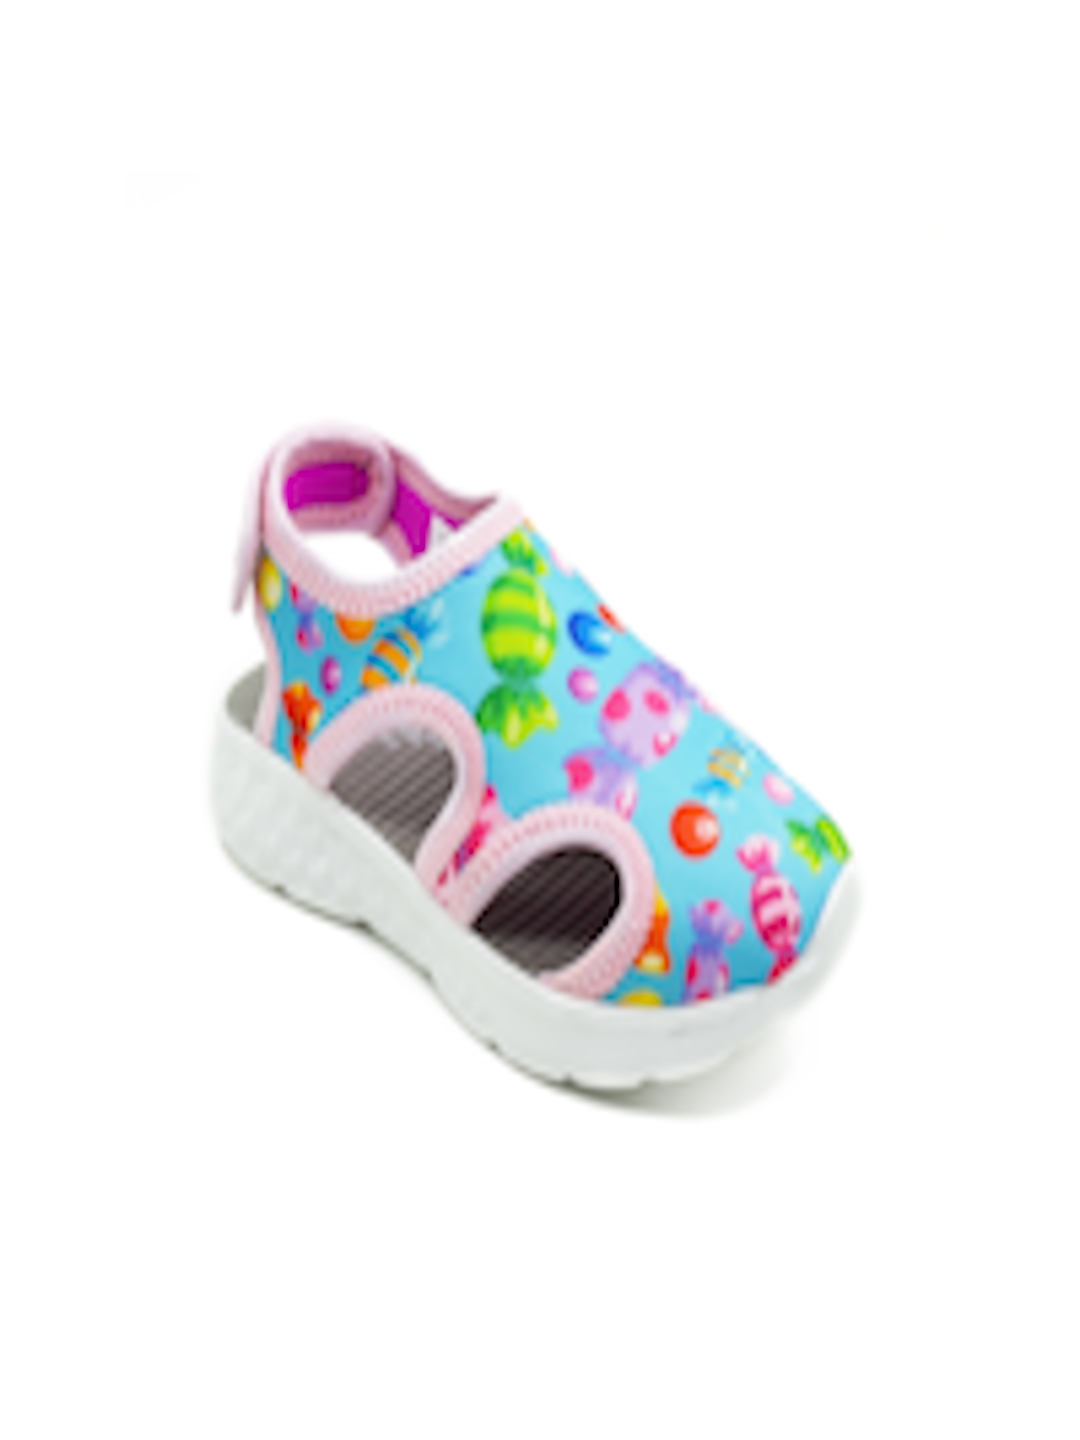 Buy KazarMax Unisex Kids White Shoe Style Sandals - Sandals for Unisex ...